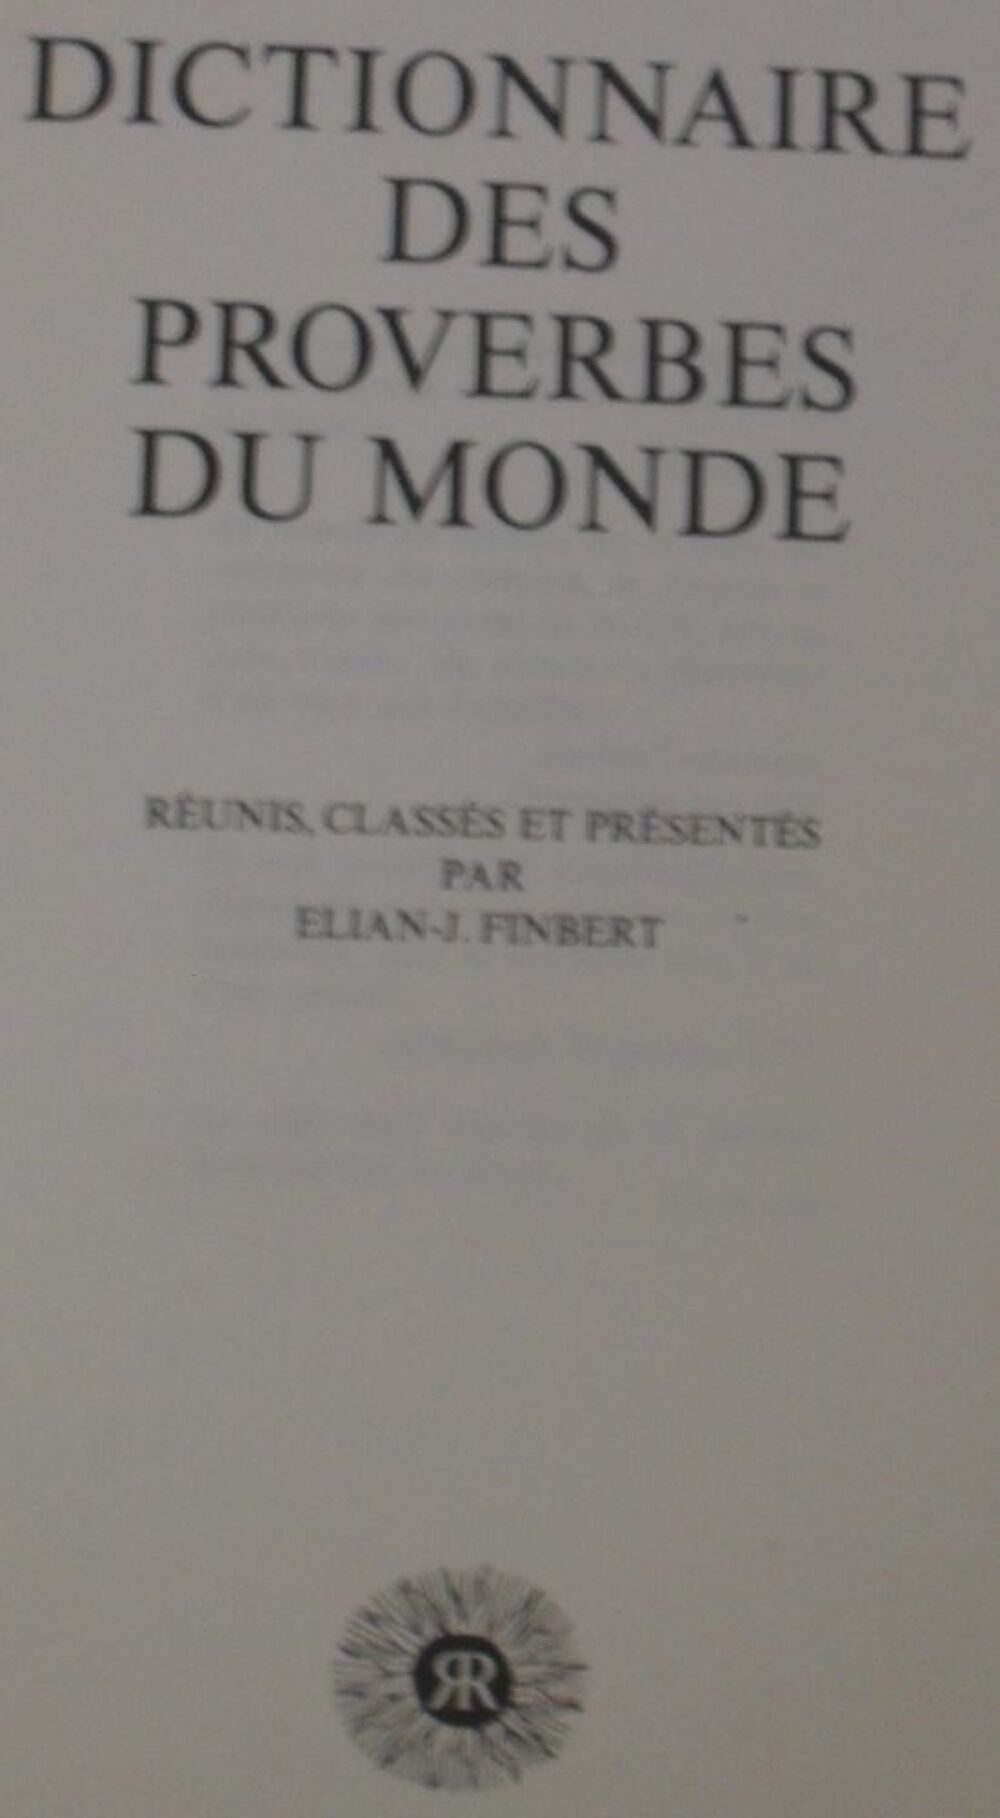 Dictionnaire des proverbes du monde de Elian-J-Finbert Livres et BD